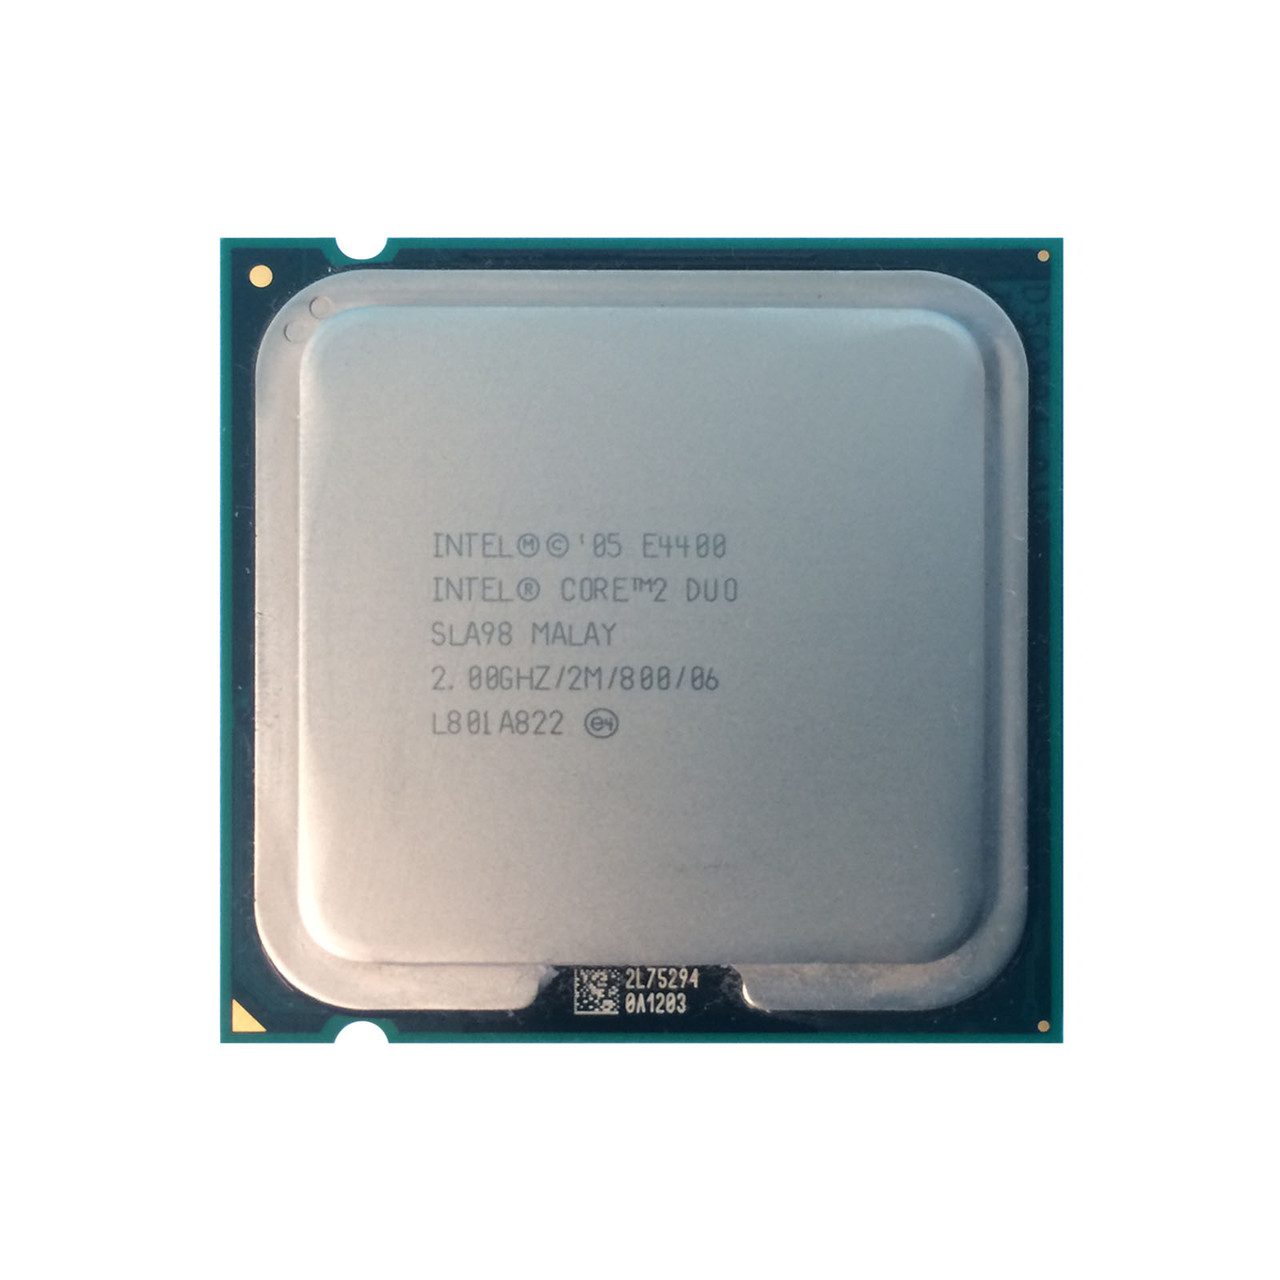 Intel SLA98 Core 2 Duo E4400 DC 2.0Ghz 2MB 800FSB Processor